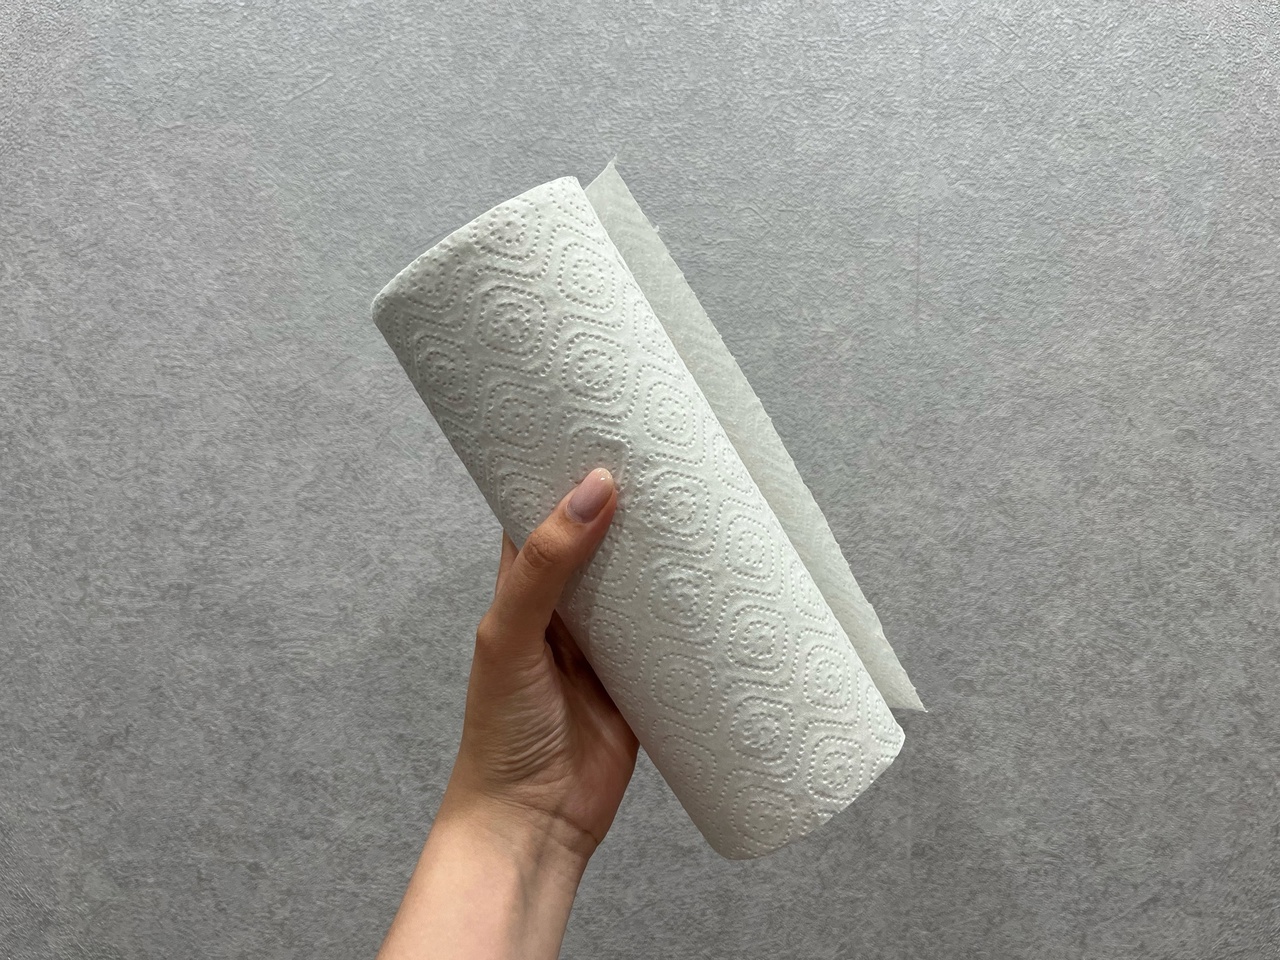  Отрываю бумажное полотенце и кладу на дно раковины до прихода гостей: этот трюк упростит быт 